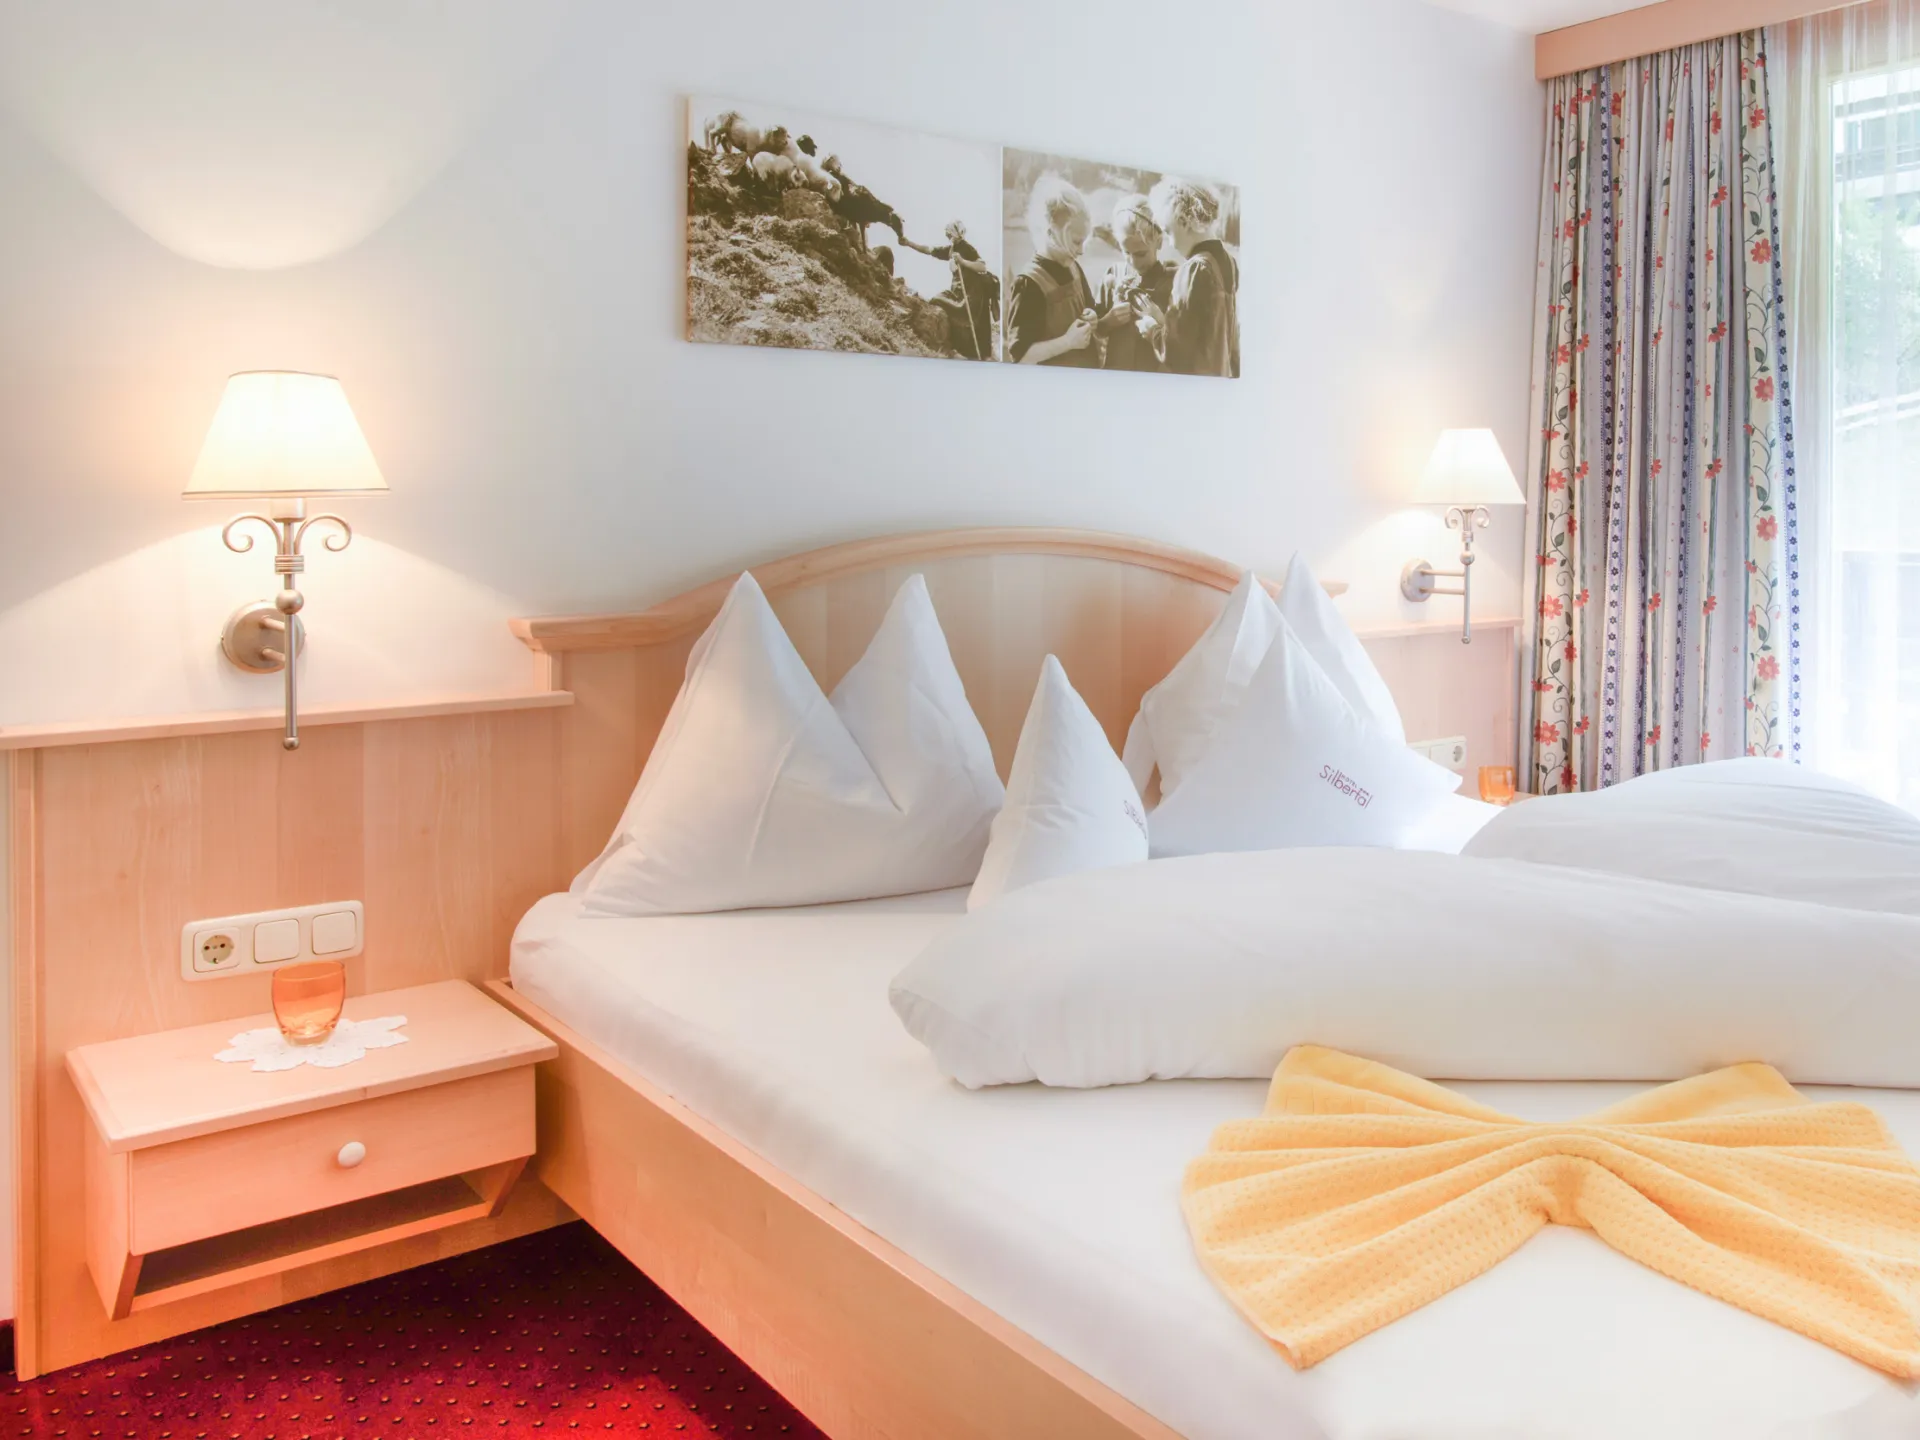 Schön gemachtes Doppelbett in einem Hotelzimmer mit gelben Elementen auf dem Bett. 